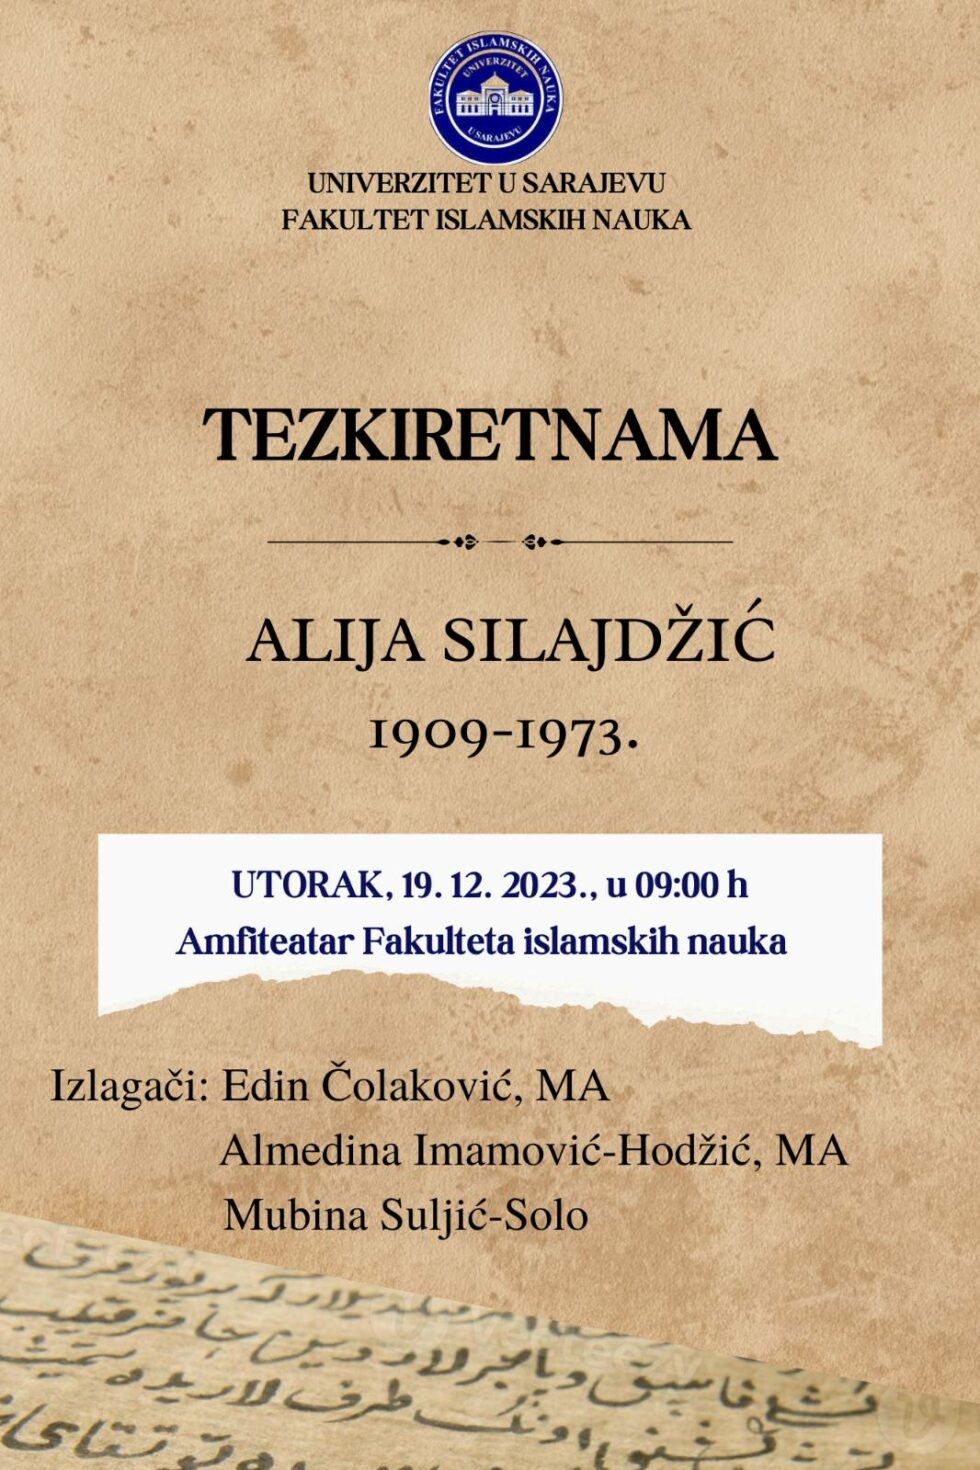 Kolokvij o dr. Aliji Silajdžiću na Fakultetu islamskih nauka